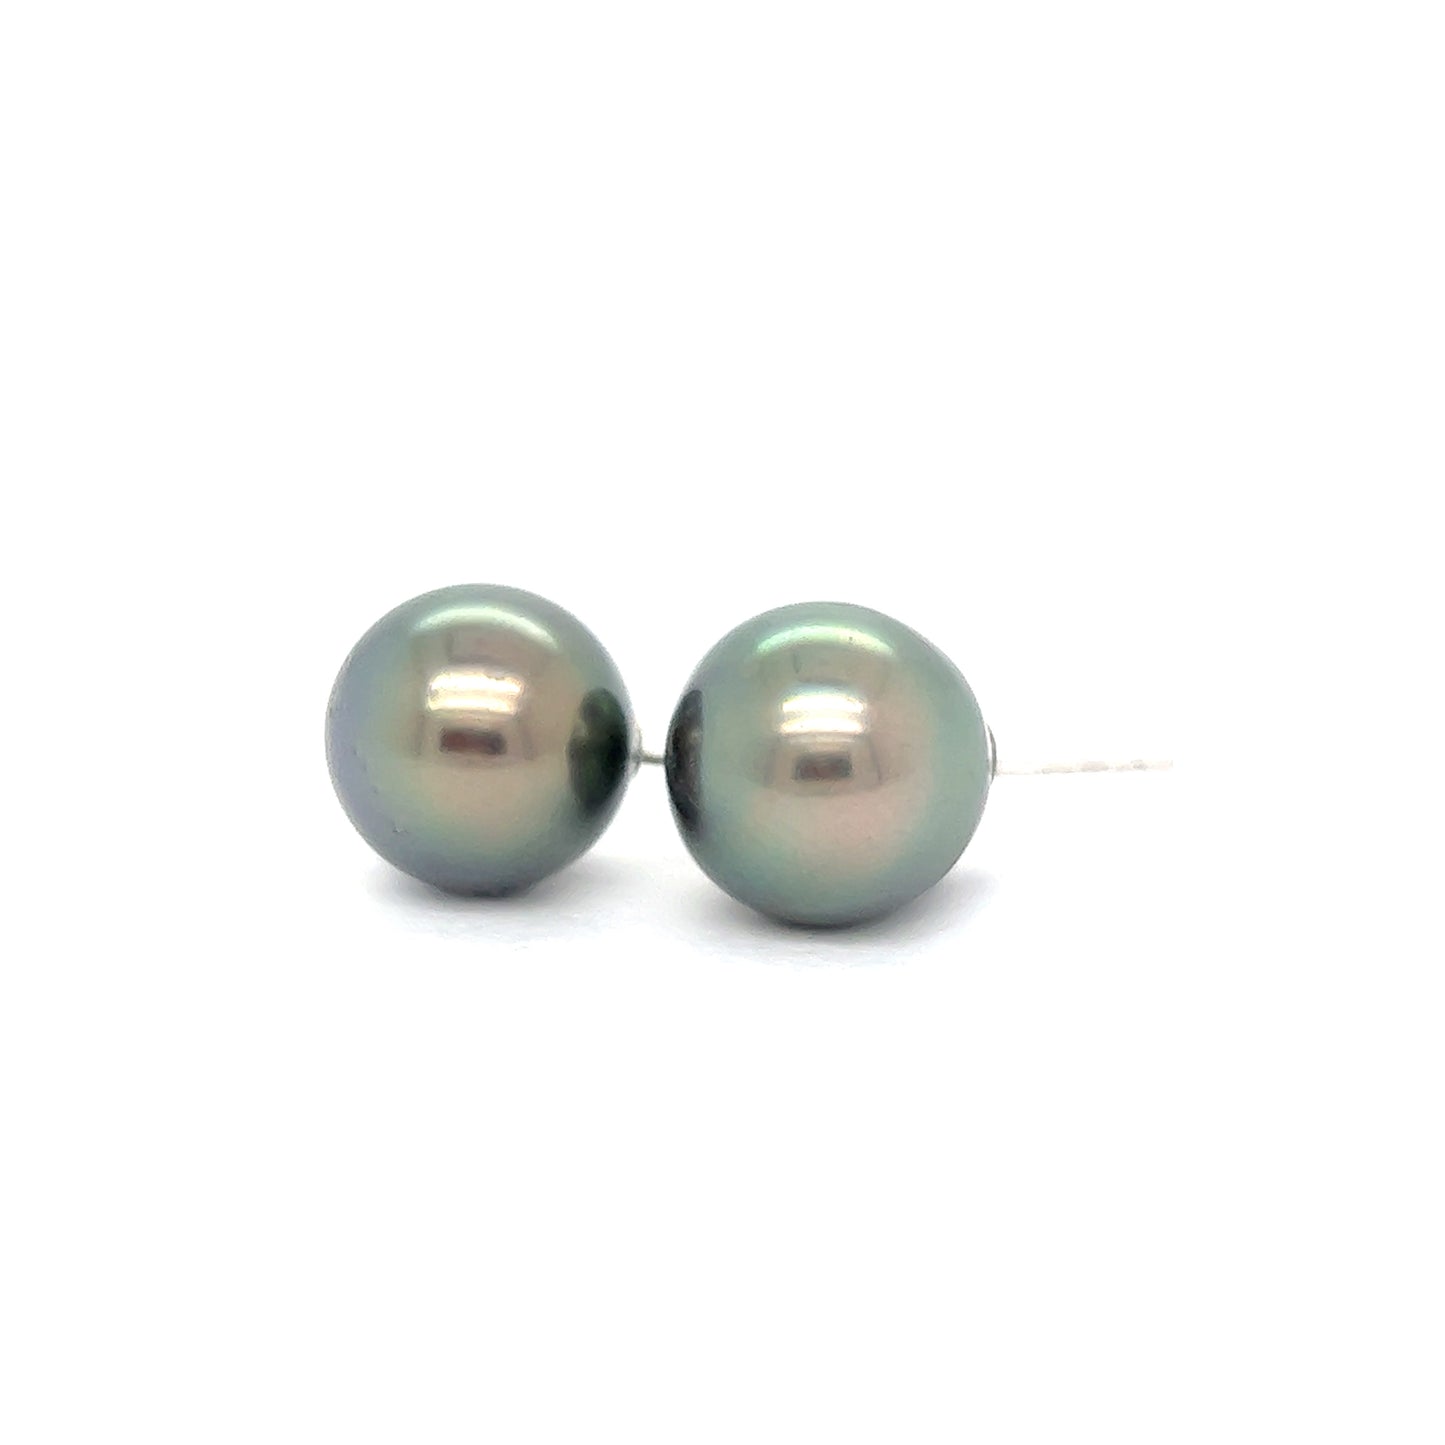 Swirl pearl earrings